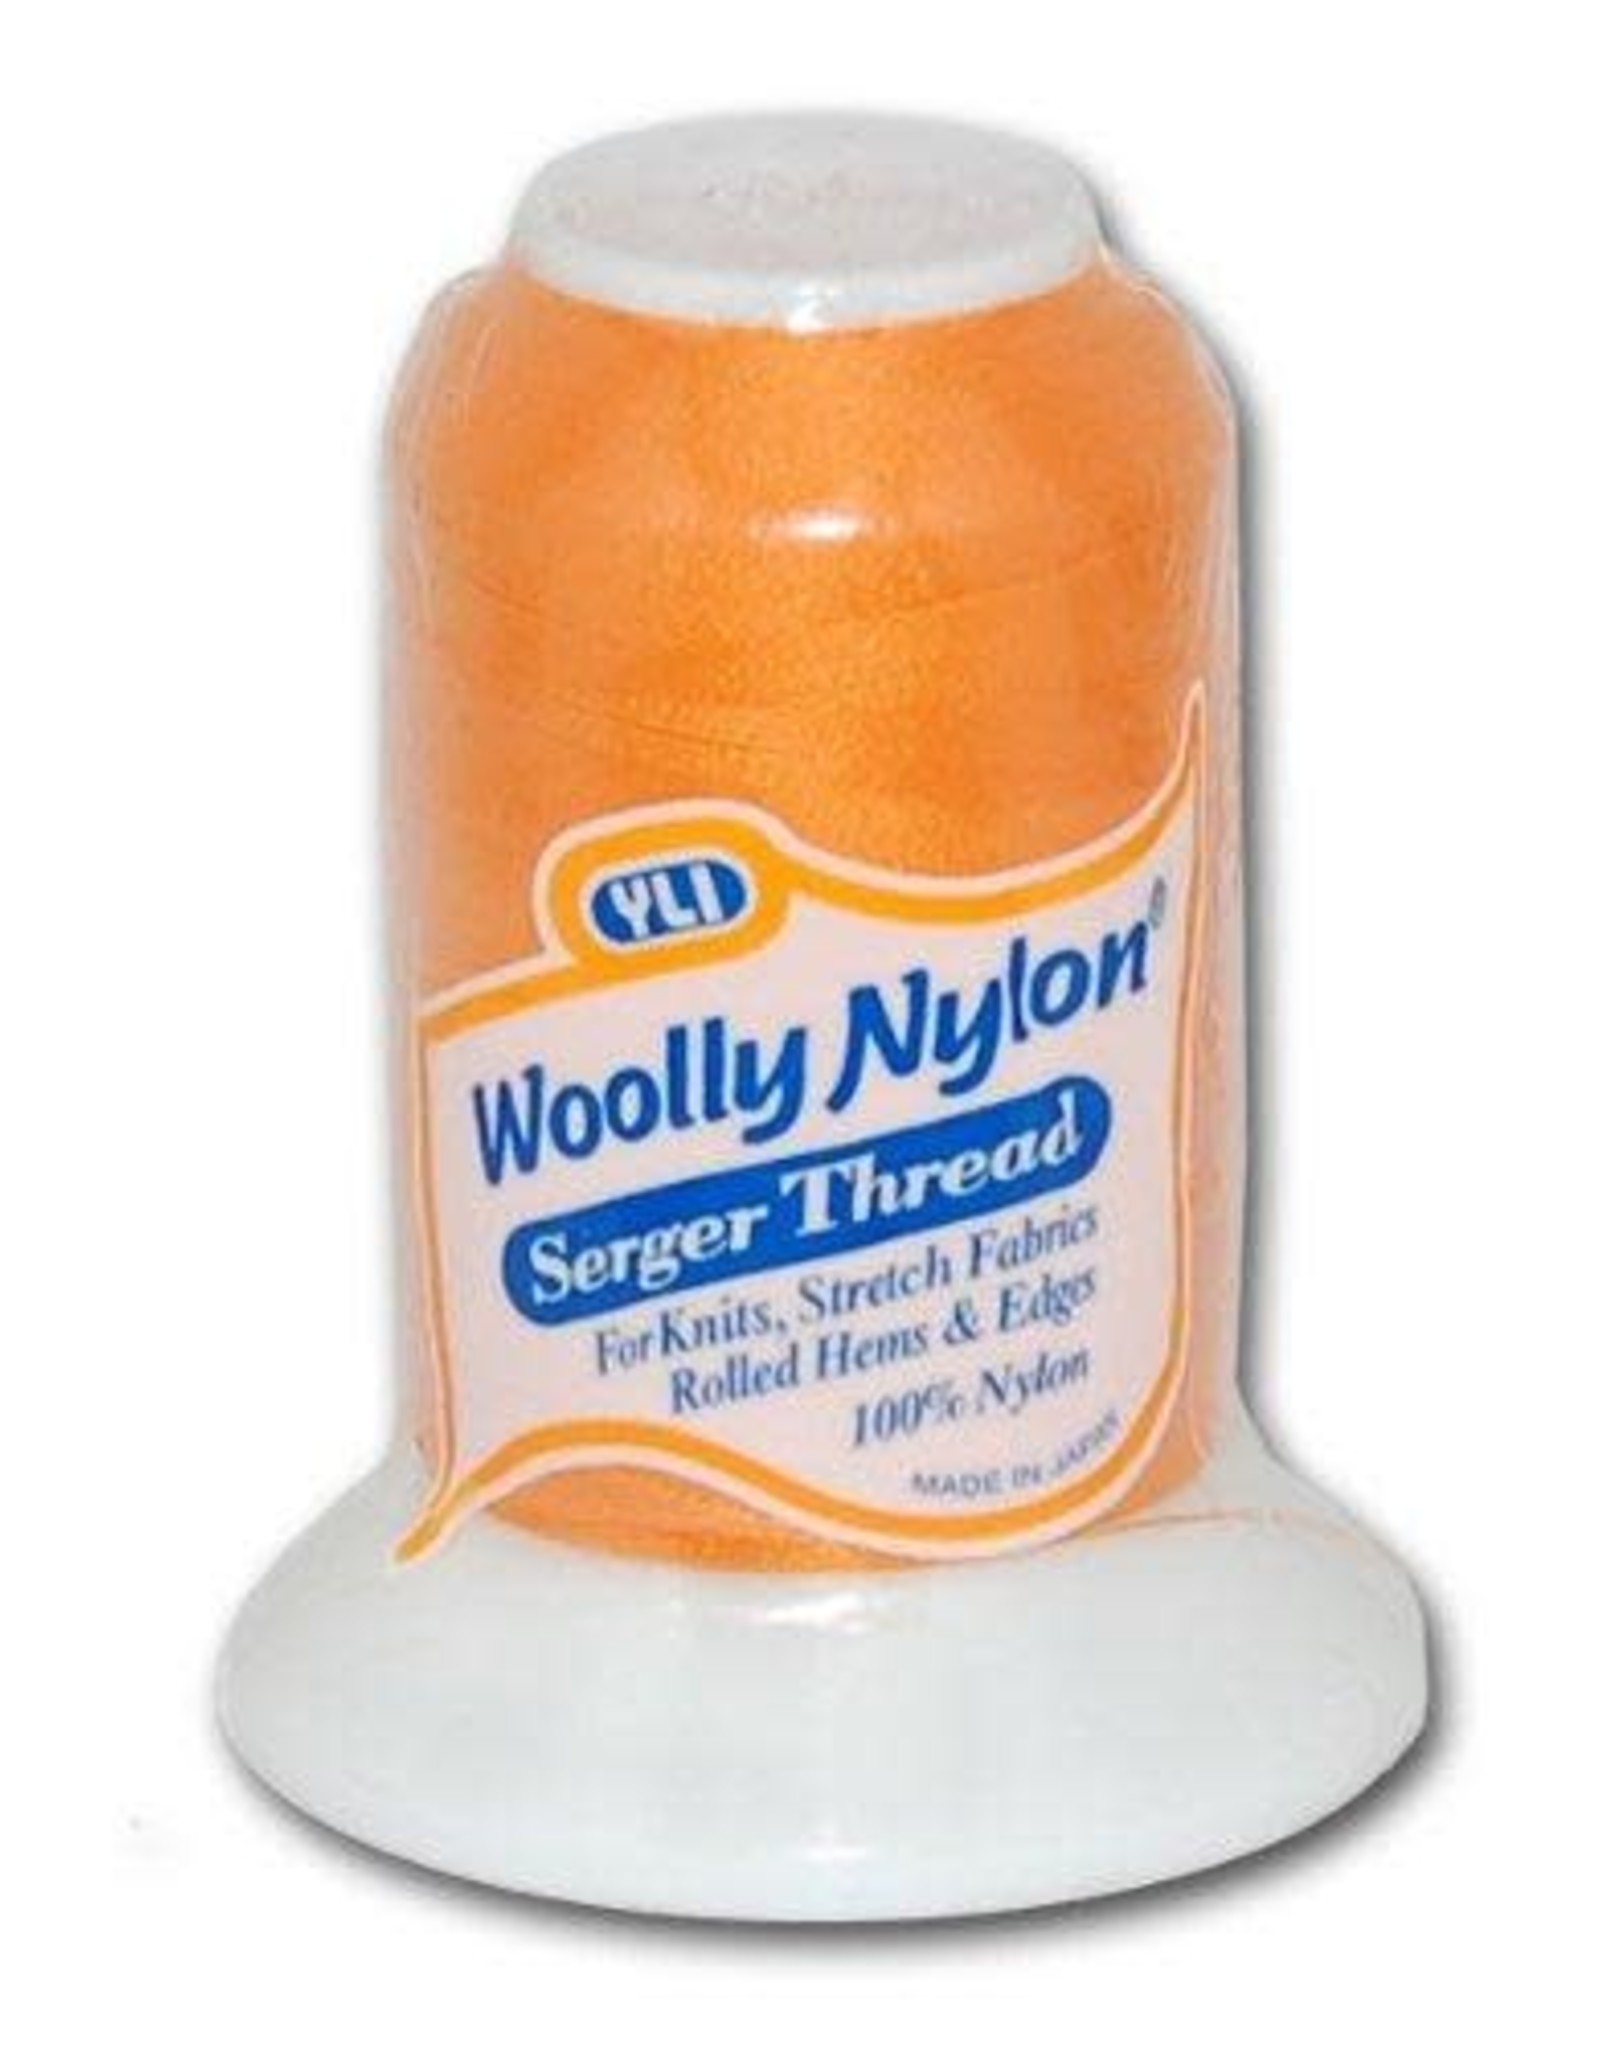 Wooly nylon marigold